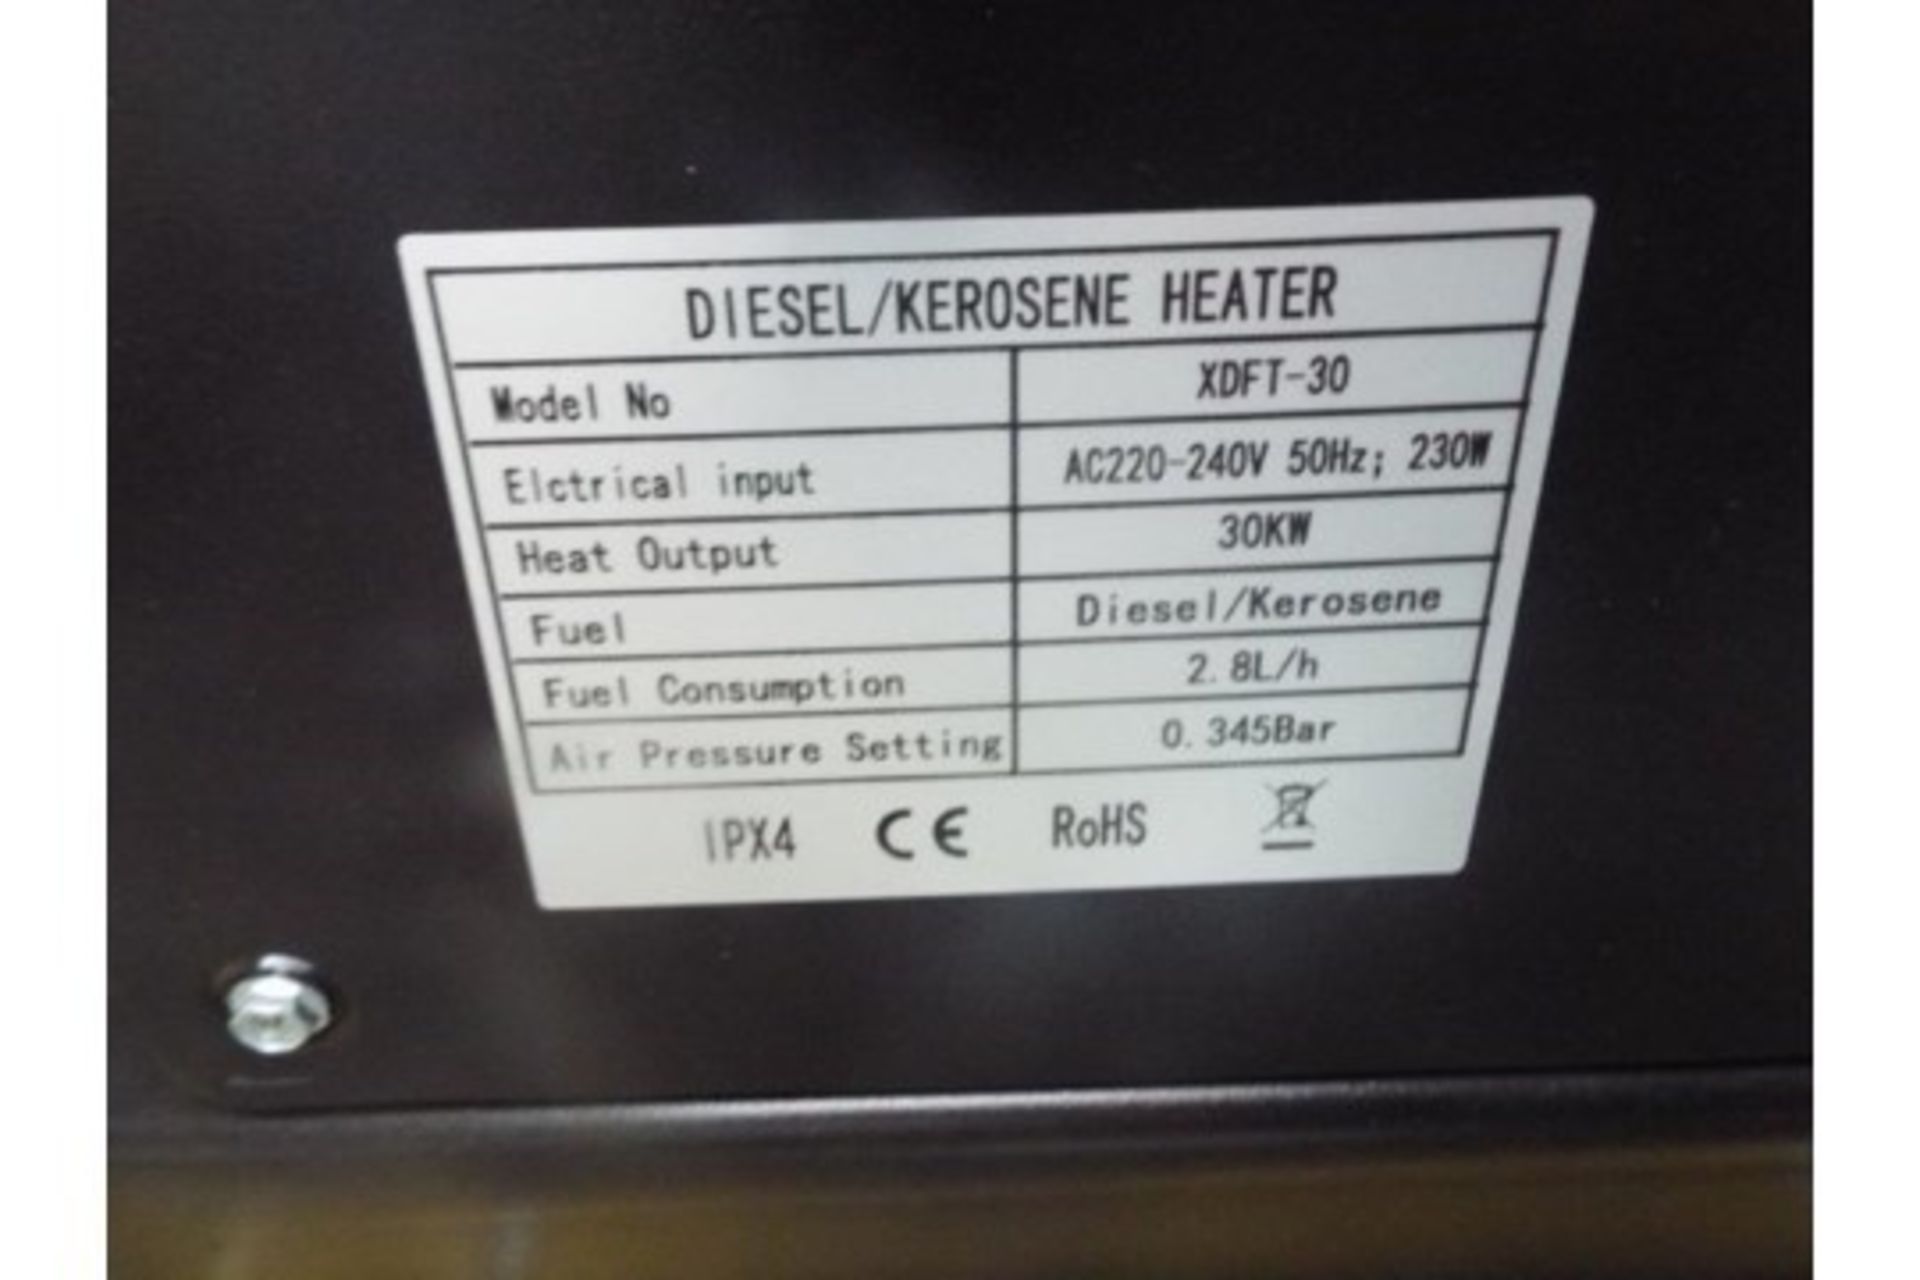 ** BRAND NEW ** XDFT-30 Diesel Space Heater - Image 9 of 10